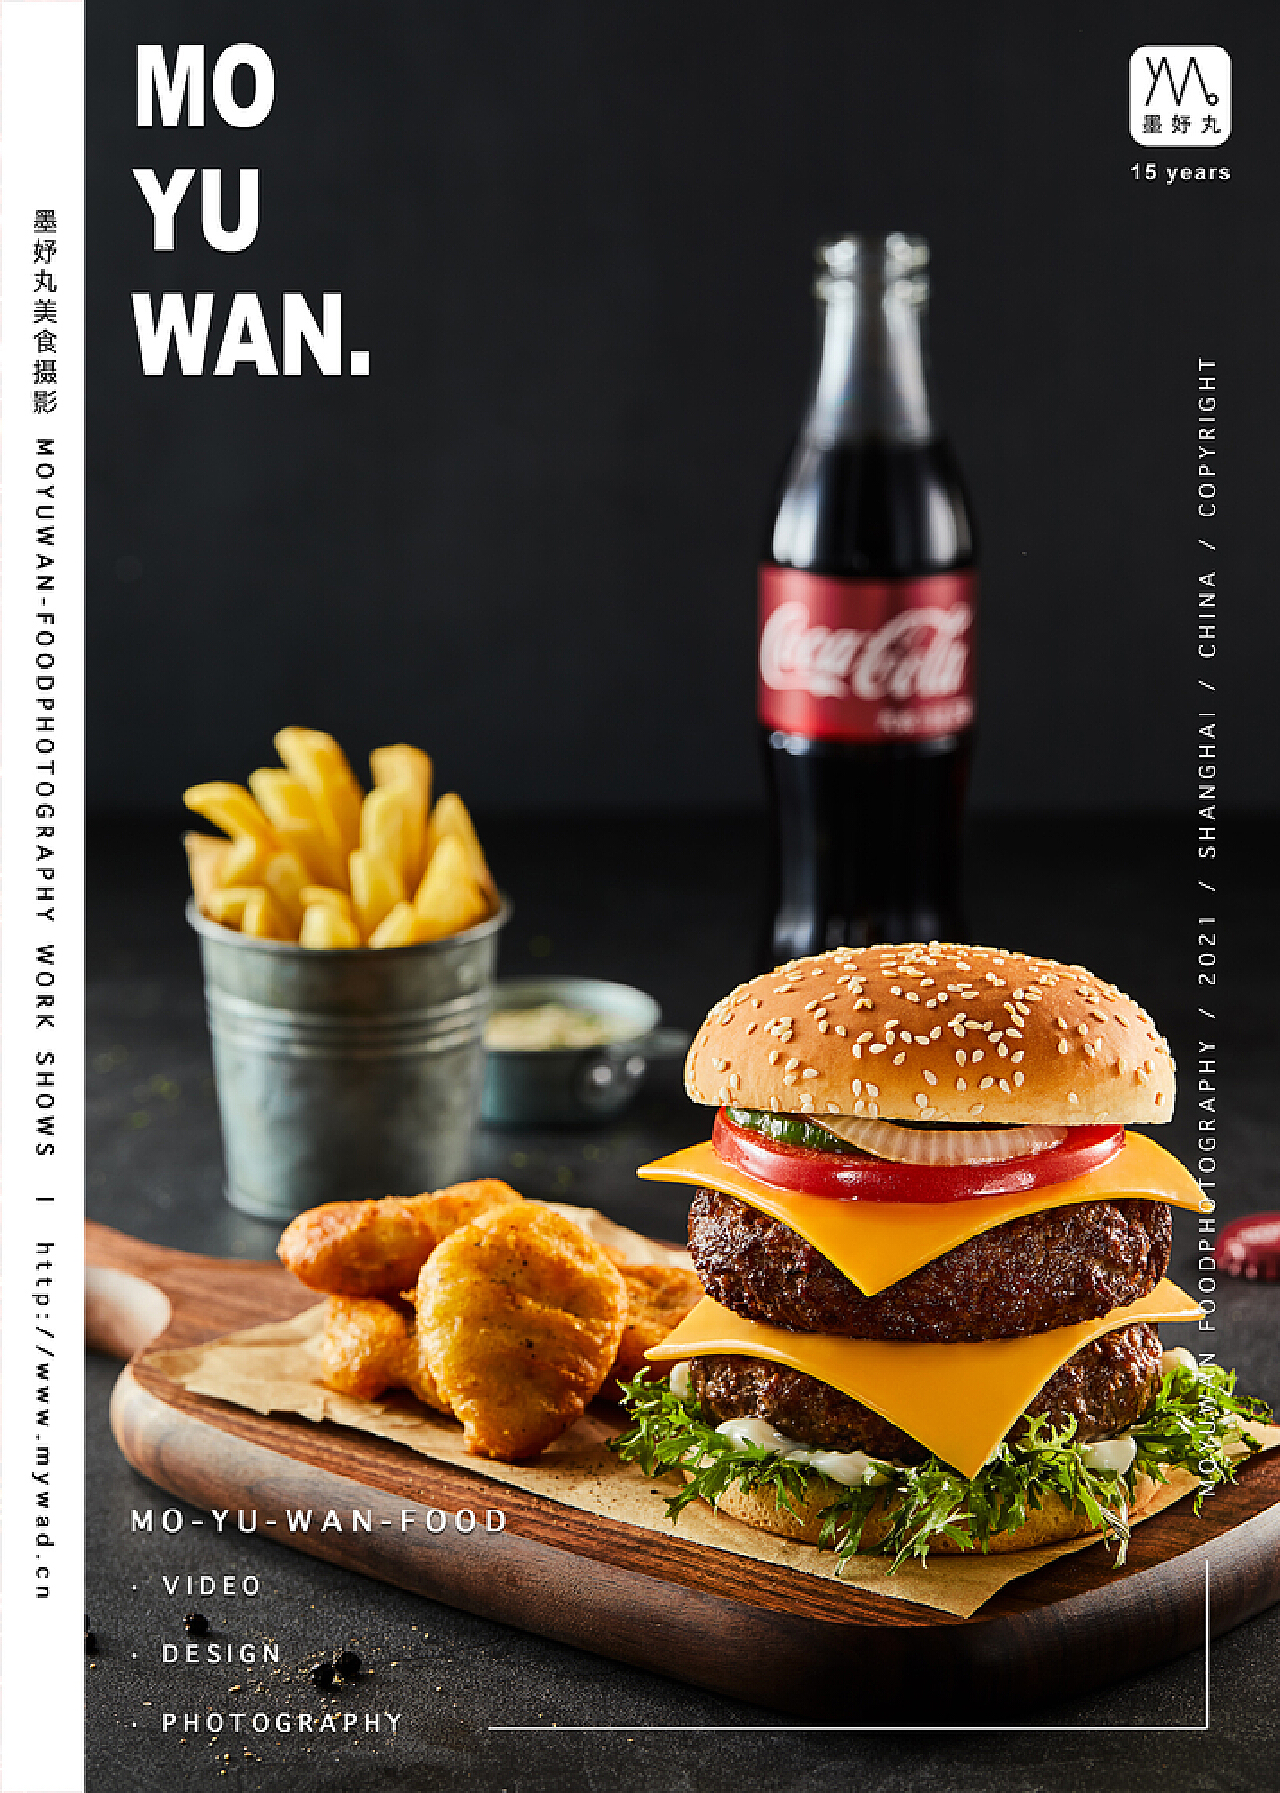 高清汉堡套餐图片免费下载 - 觅知网